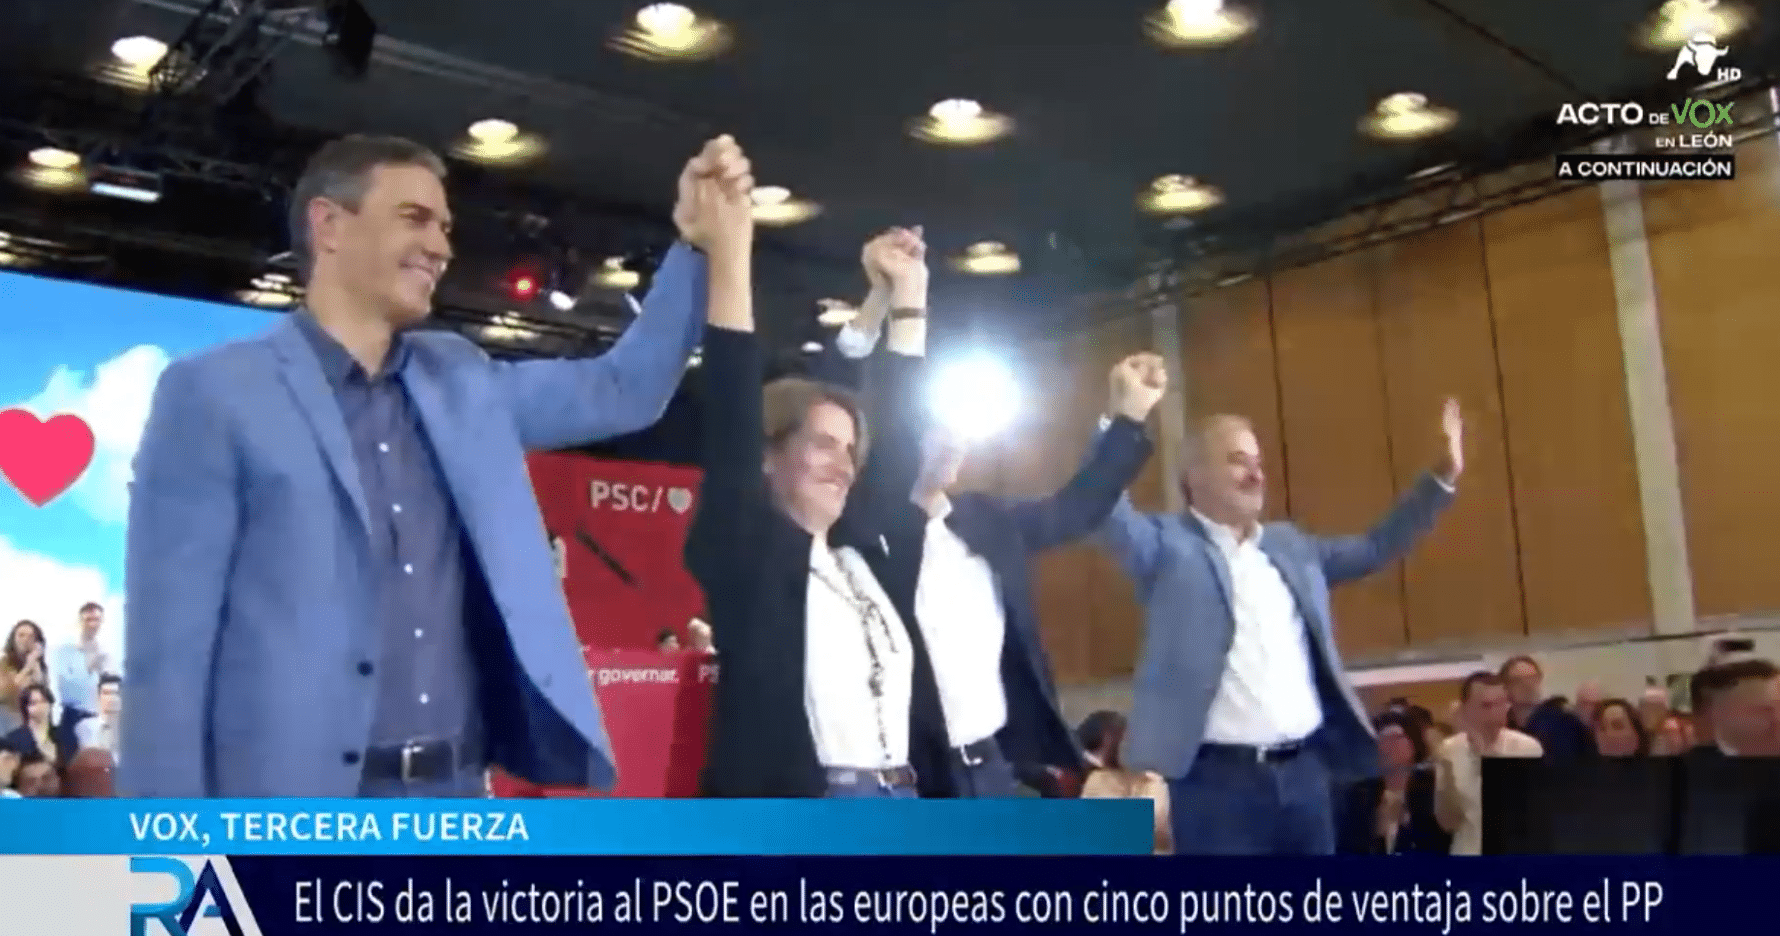  Último CIS de Tezanos: el PSOE sacaría 5 puntos de ventaja al PP en las Elecciones Europeas